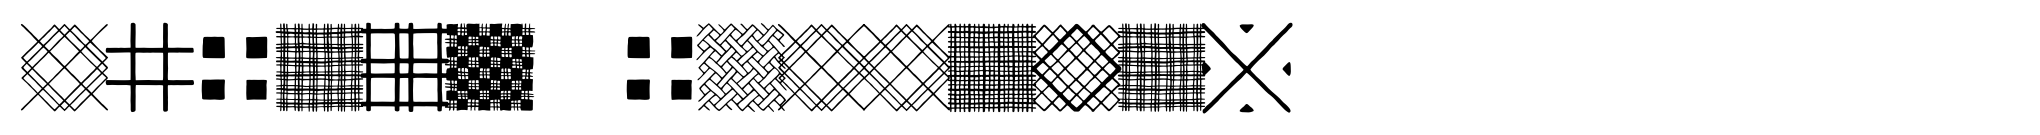 Typnic Patterns image